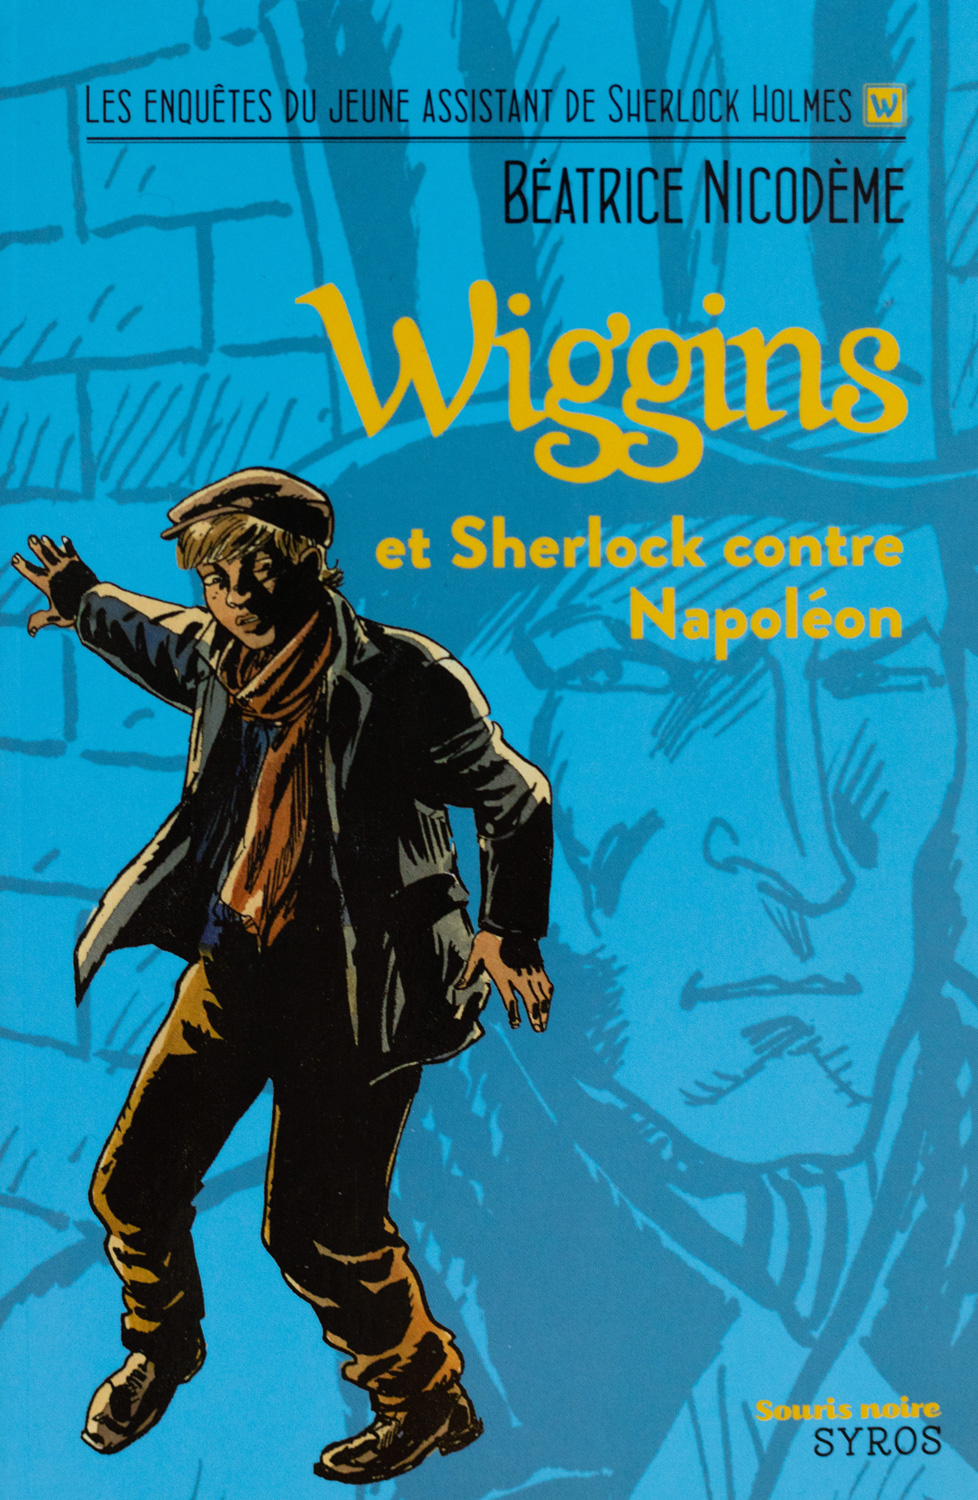 Beatrice Nicodeme autrice couverture du roman Wiggins et Sherlock contre Napoleon